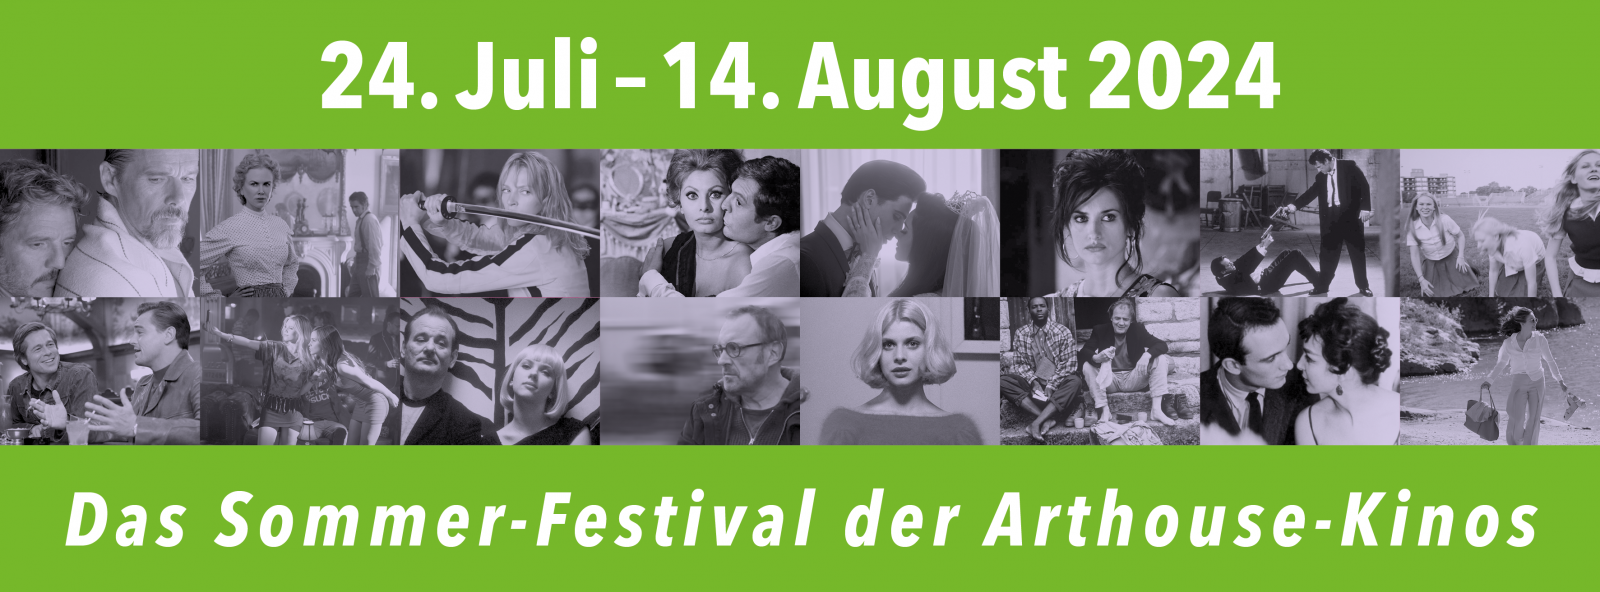 72. Münchner Filmkunstwochen - Das Sommerfestival der Arthousekinos